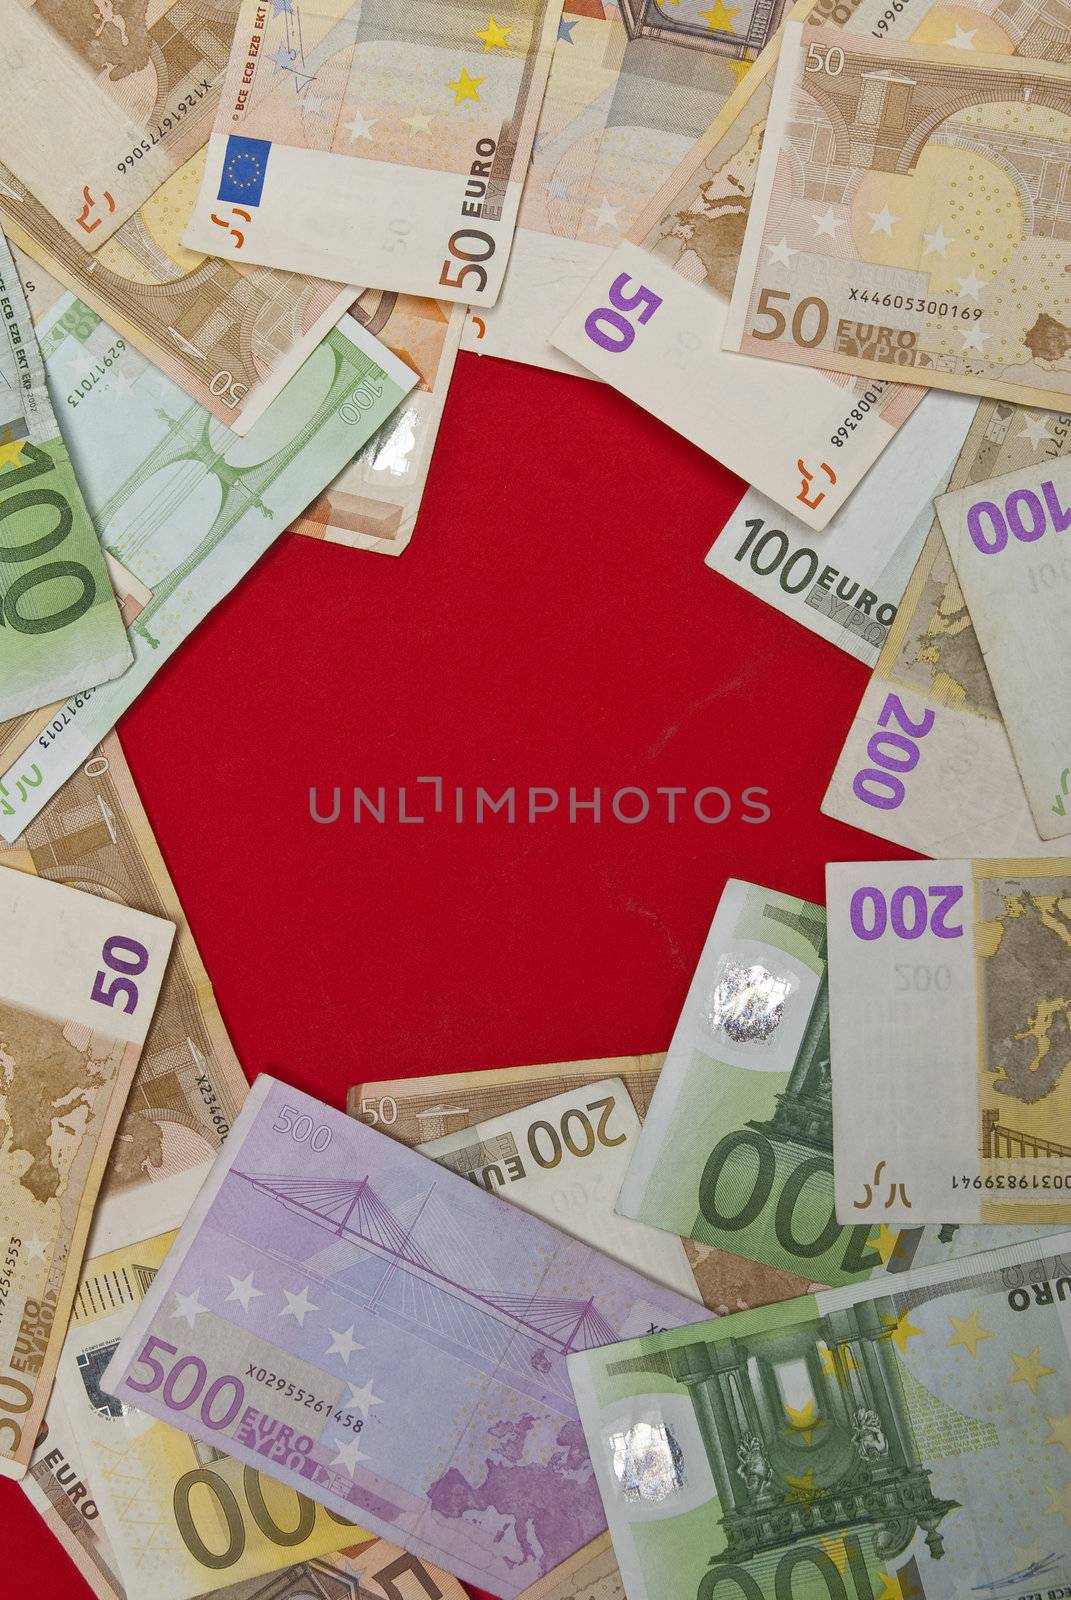 Euro bills  by adamr